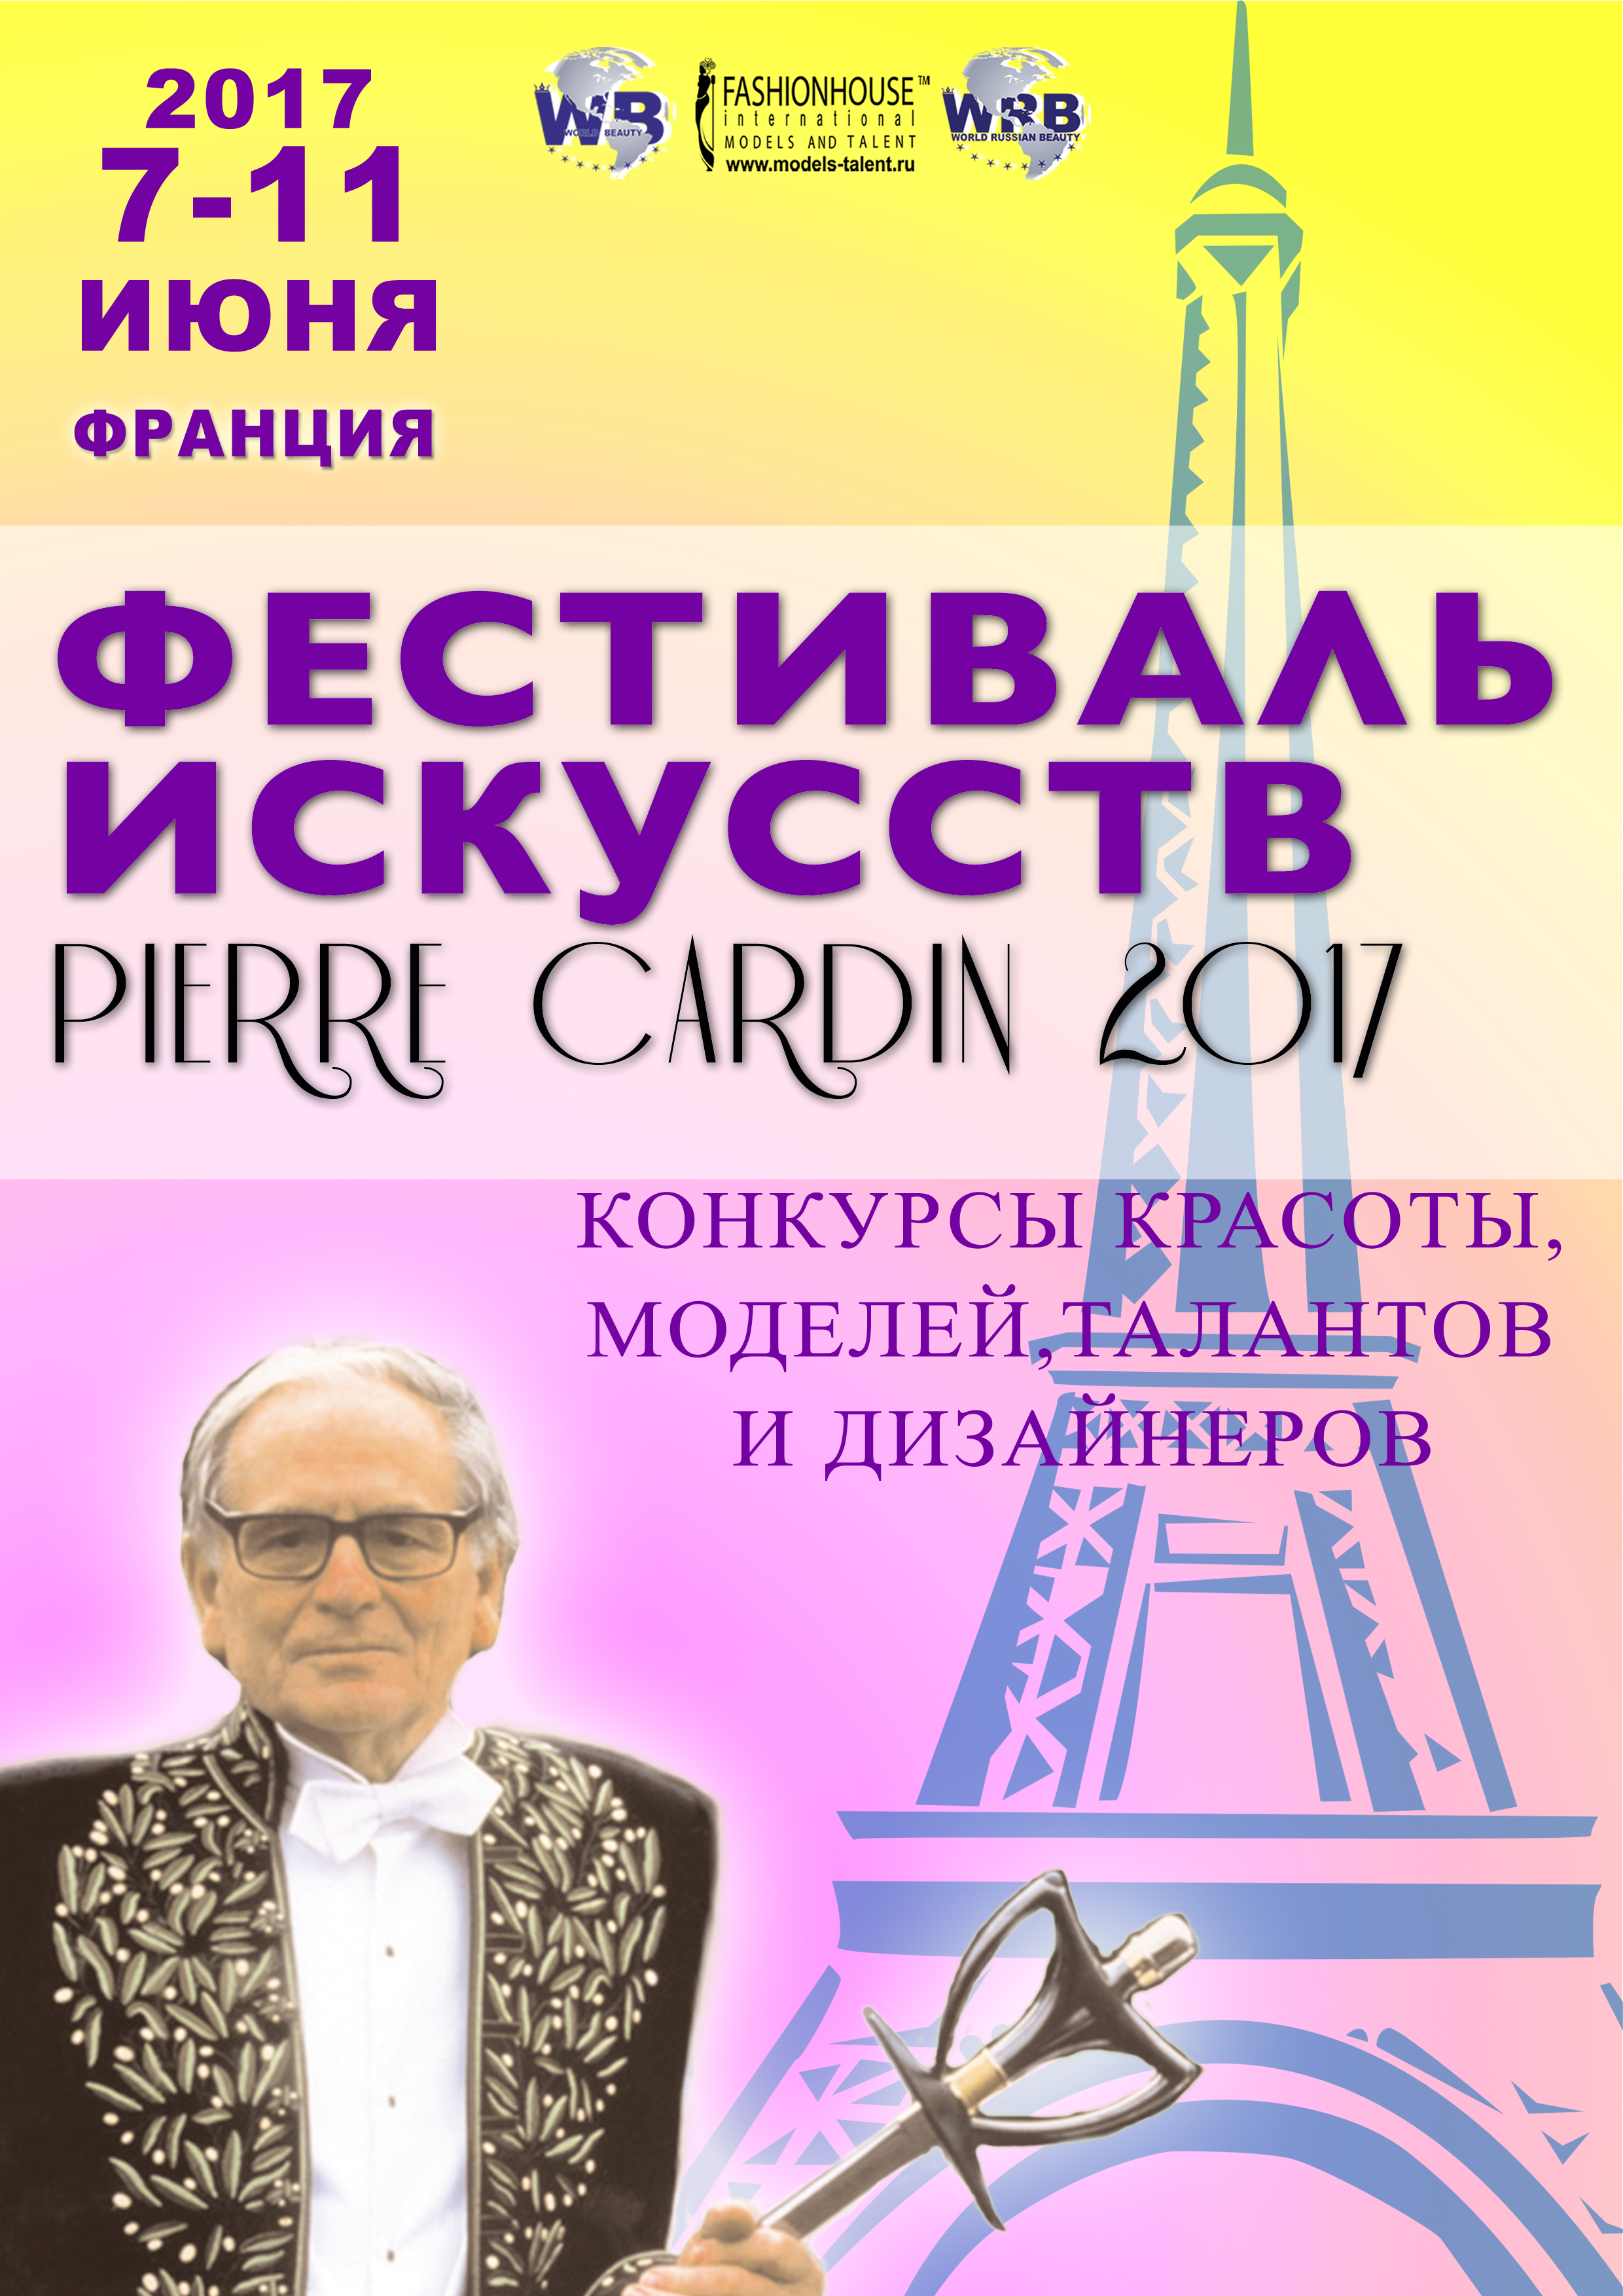 Фестиваль искусств PIERRE CARDIN 2017. Конкурс красоты,моды и таланта.(7-11 июля 2017)